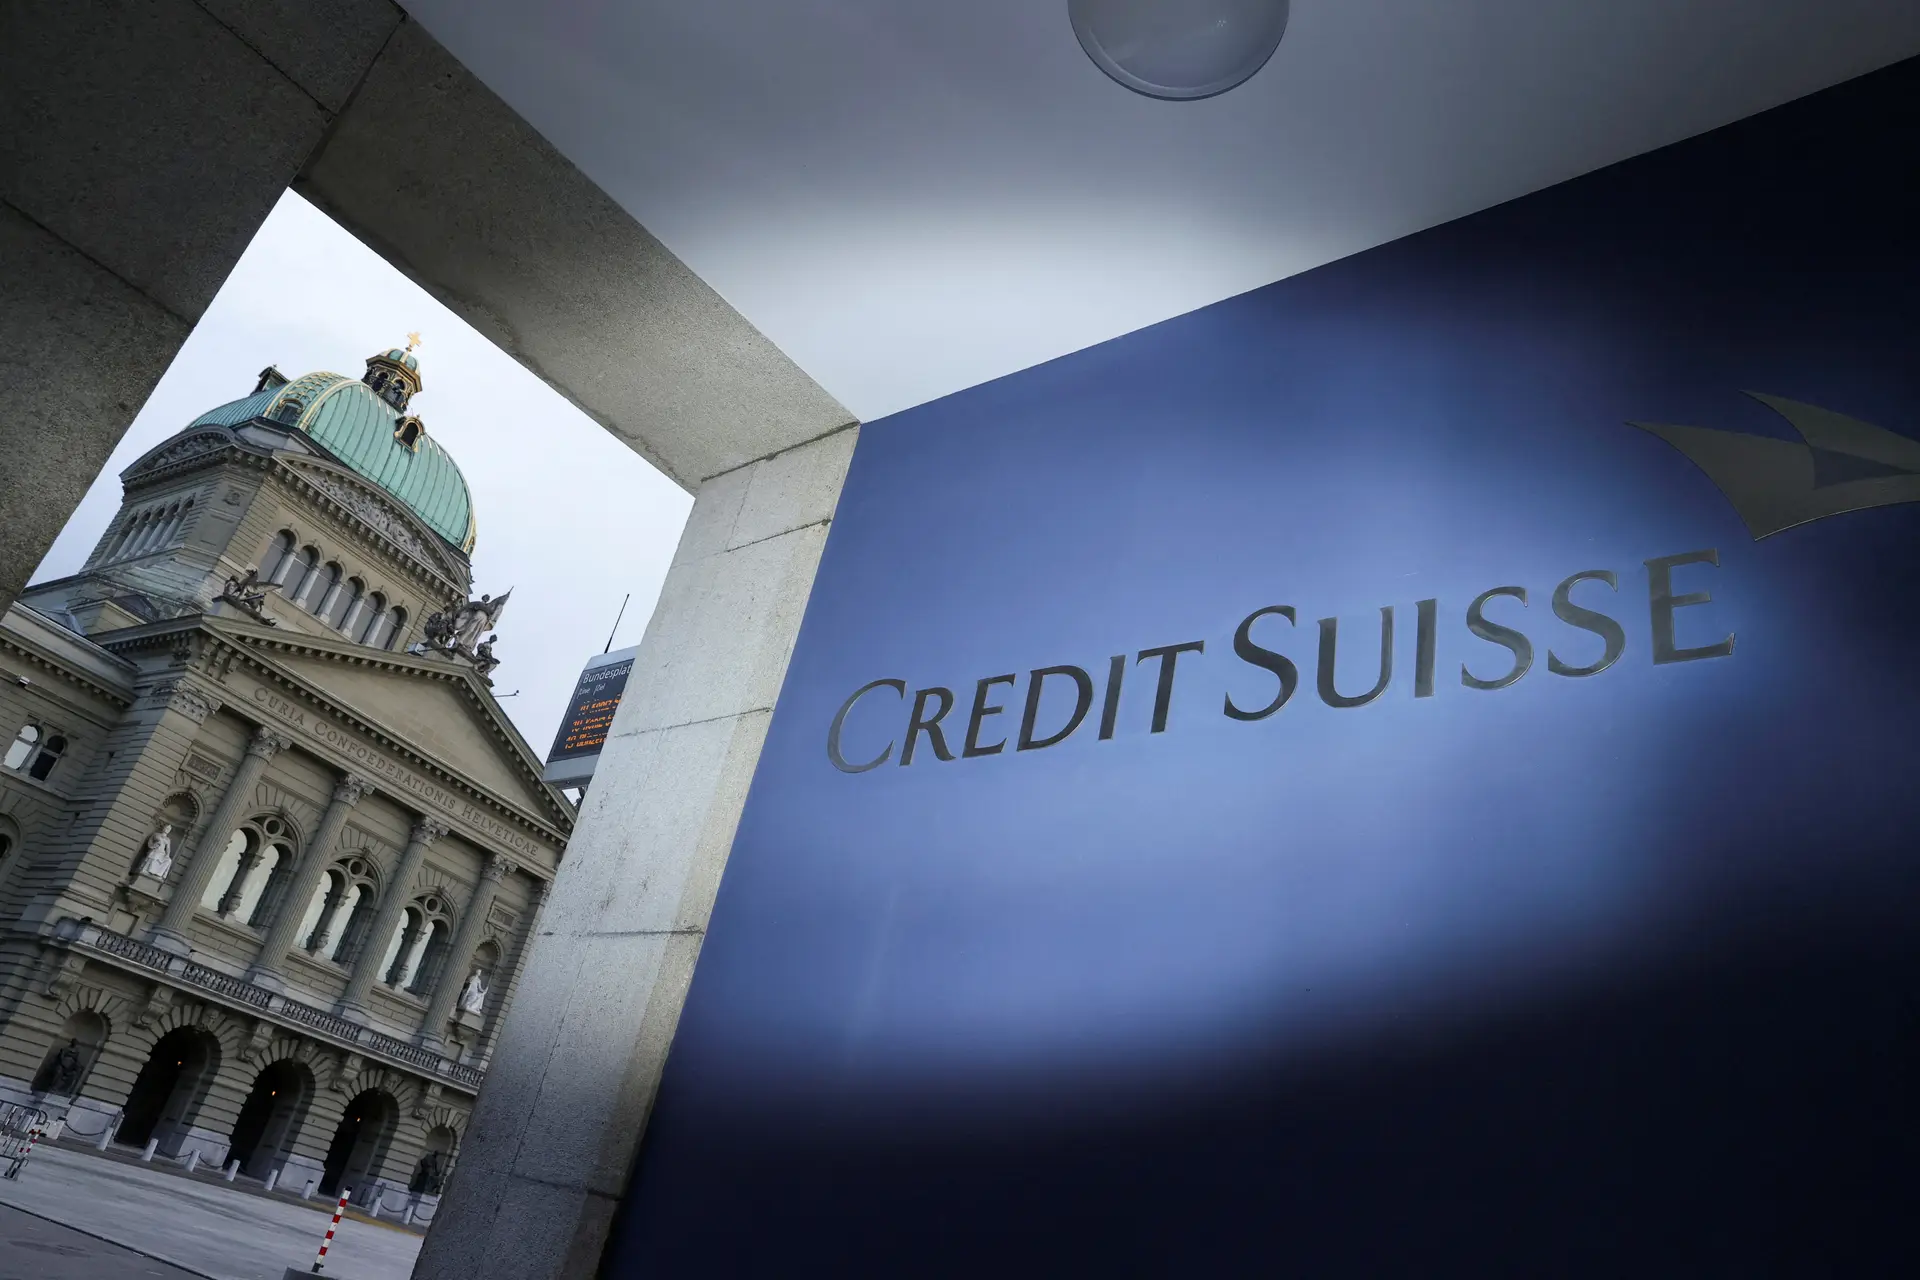 Principal acionista do Credit Suisse diz que compra pelo UBS não o afeta